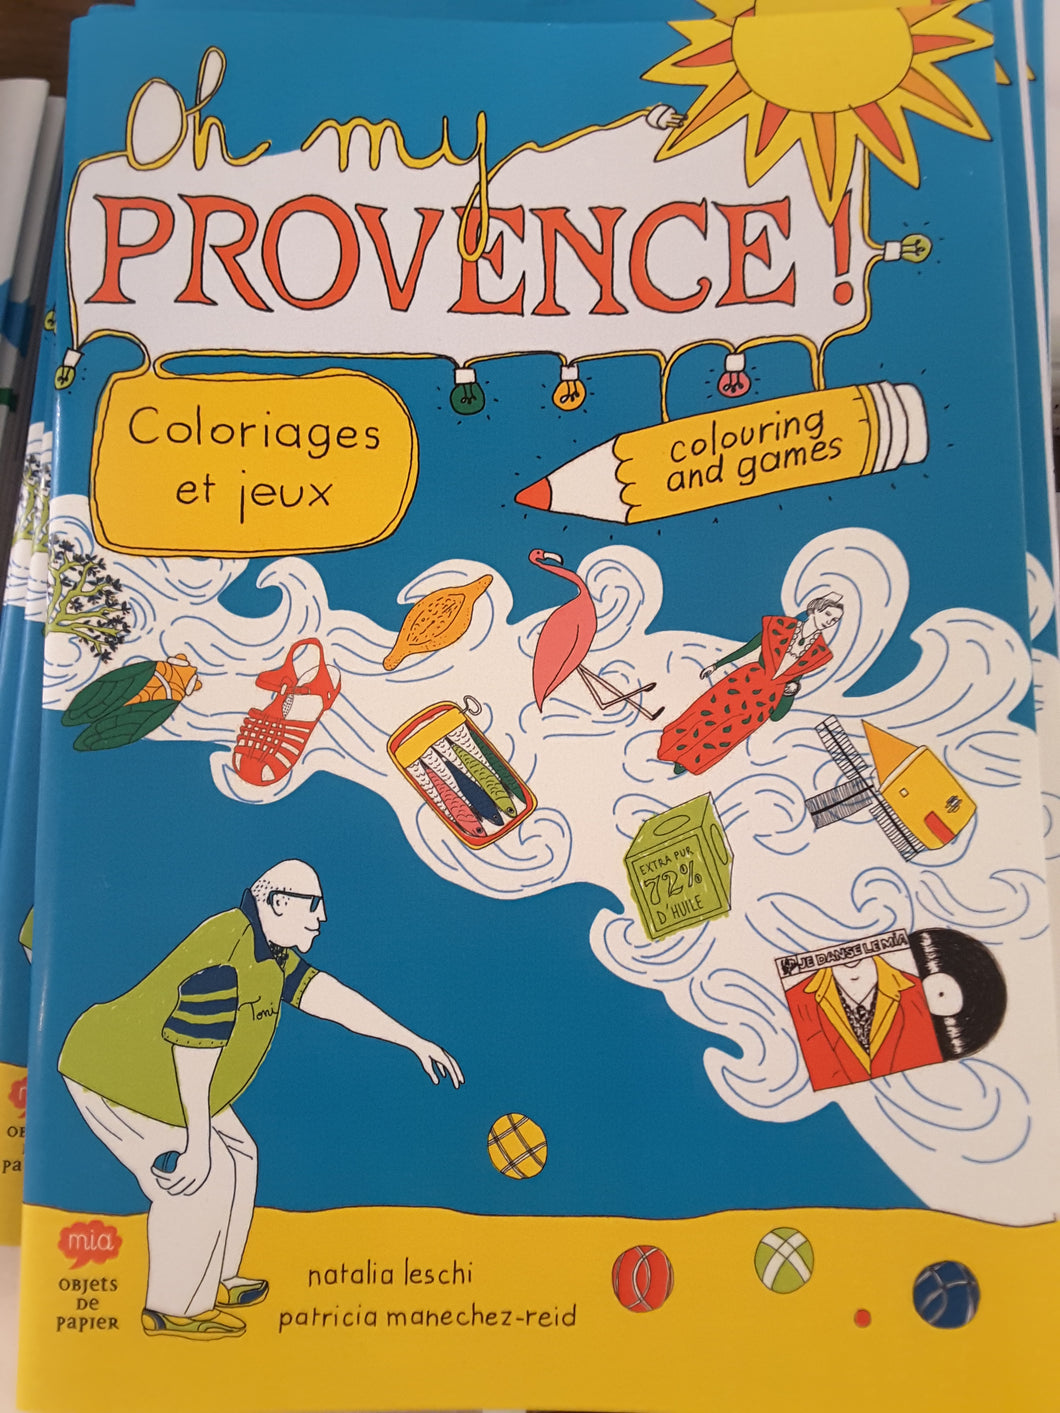 Provence ! Coloriages et jeux